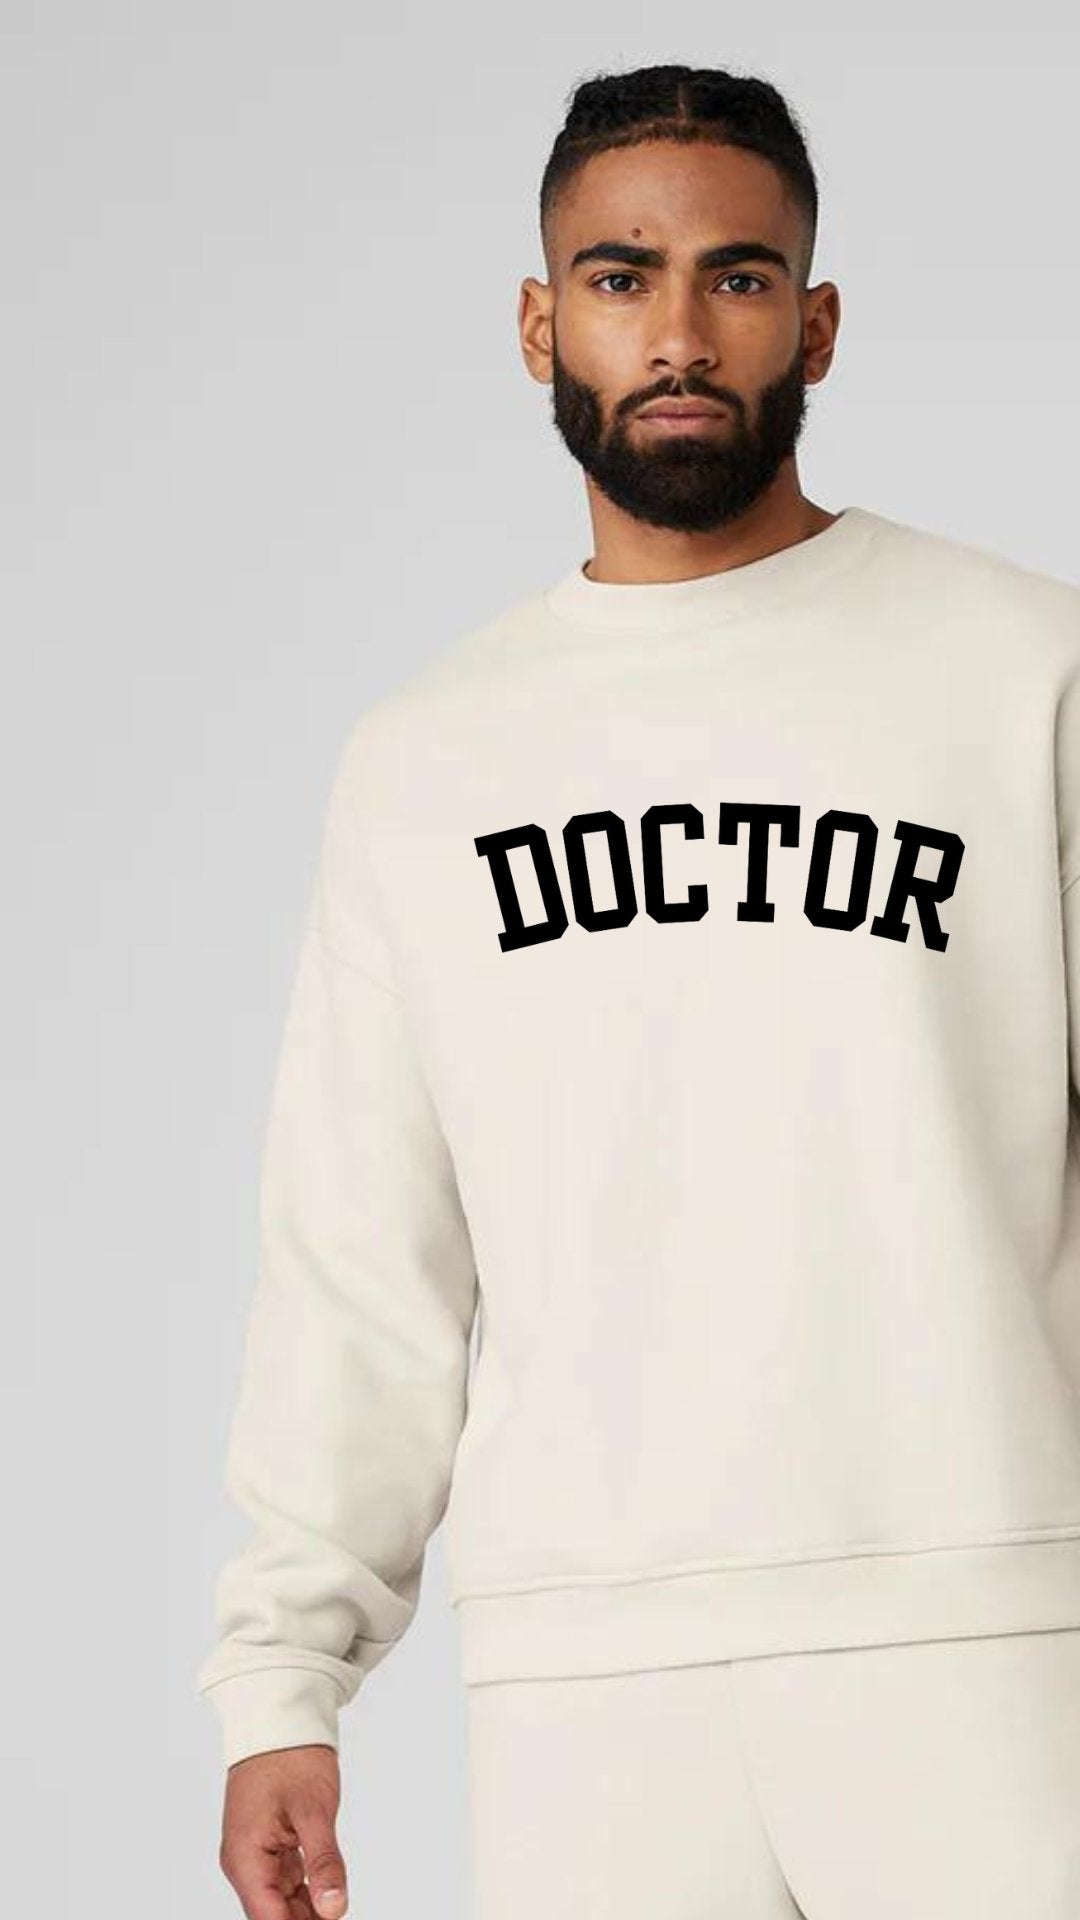 Big Doctor Energy Luxury Unisex Sweatshirt - The Woman Doctor